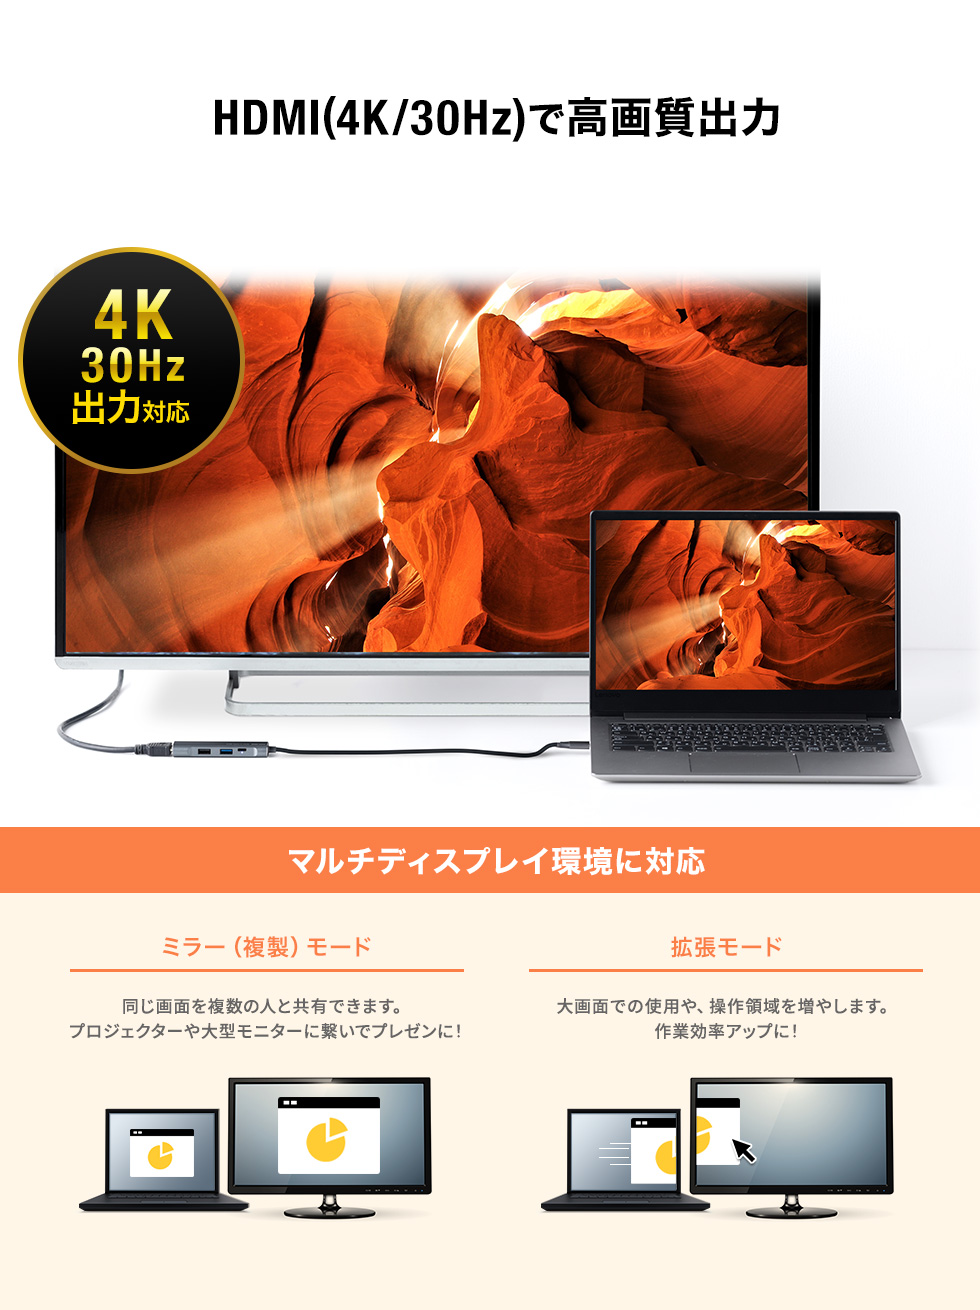 HDMI(4K/30Hz)ō掿o